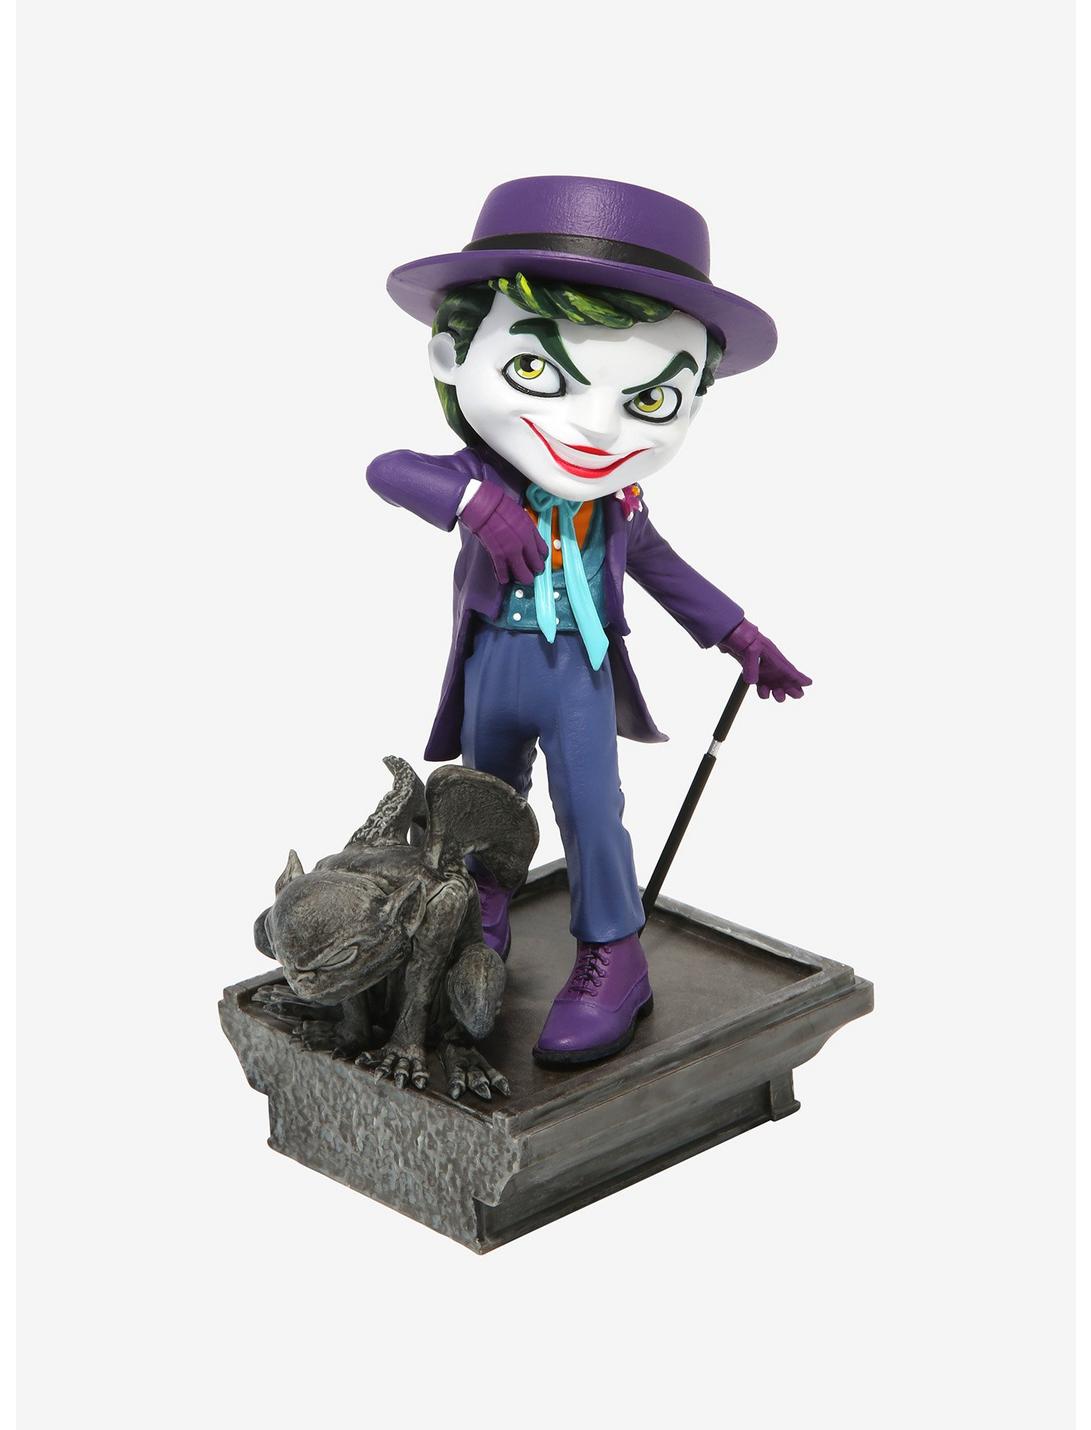 DC Comics Justice League The Joker 4” Collectable Super Hero Figurine NIP 